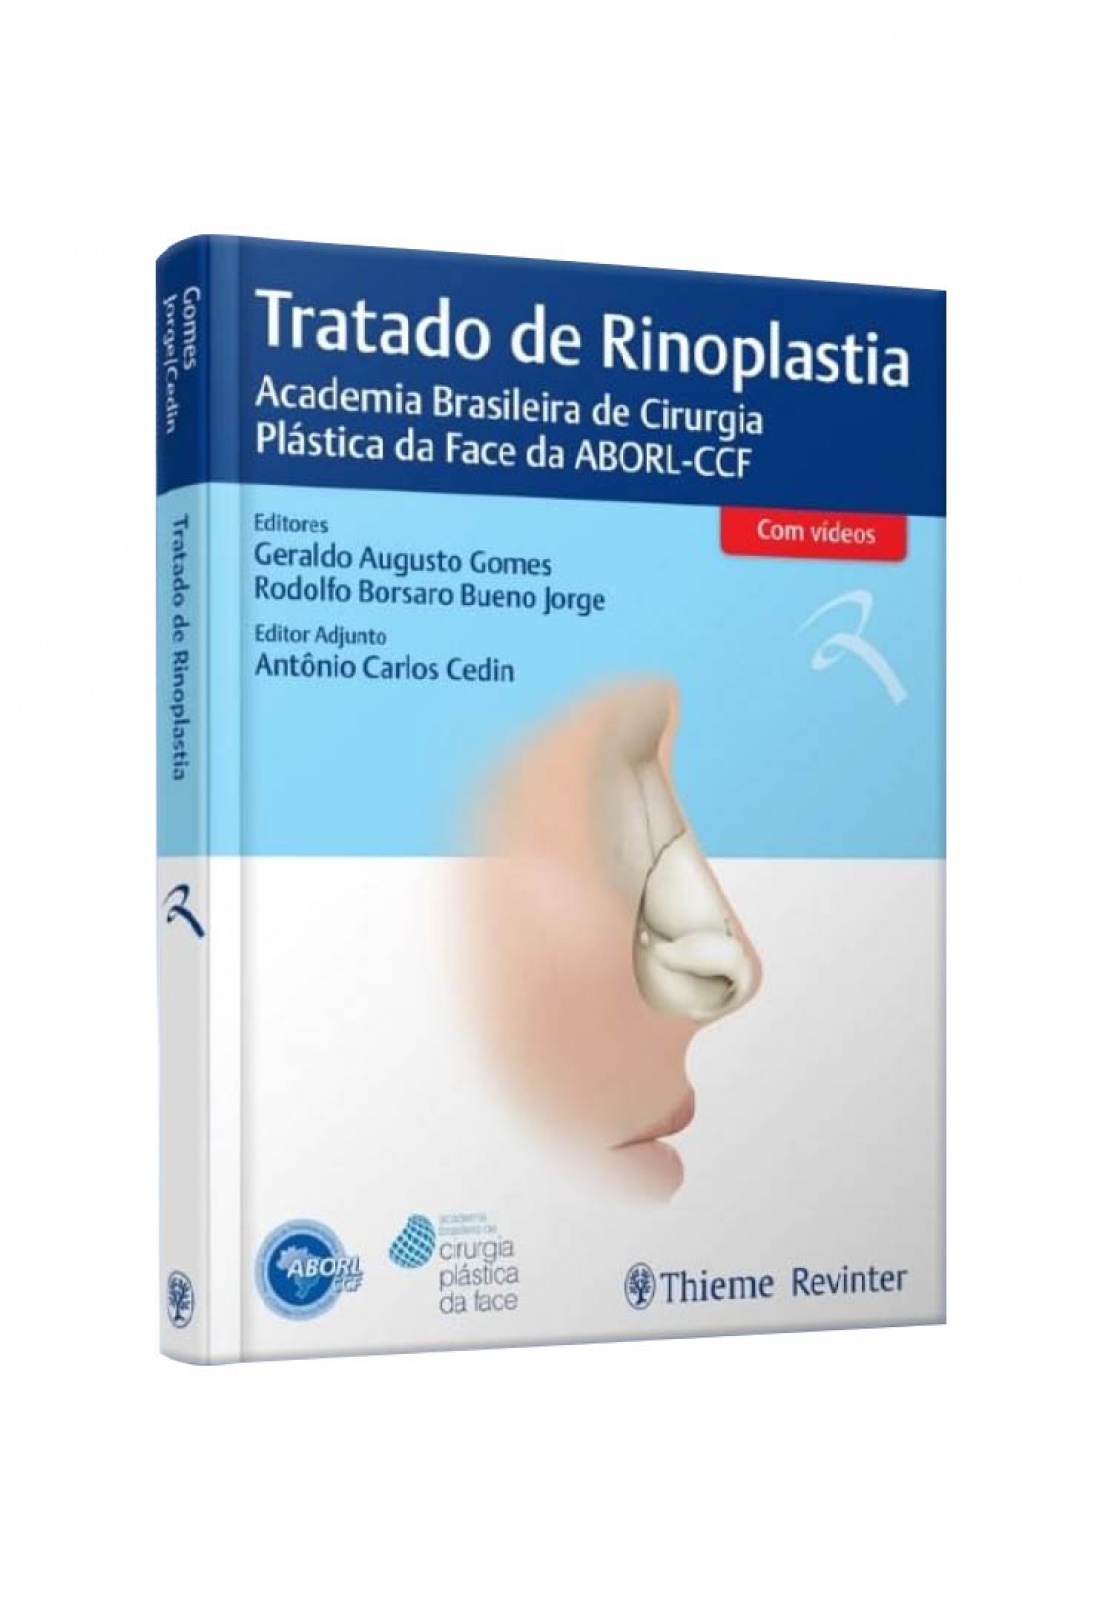 Tratado De Rinoplastia - Academia Brasileira De Cirurgia Plástica Da Face Da Aborl-Ccf